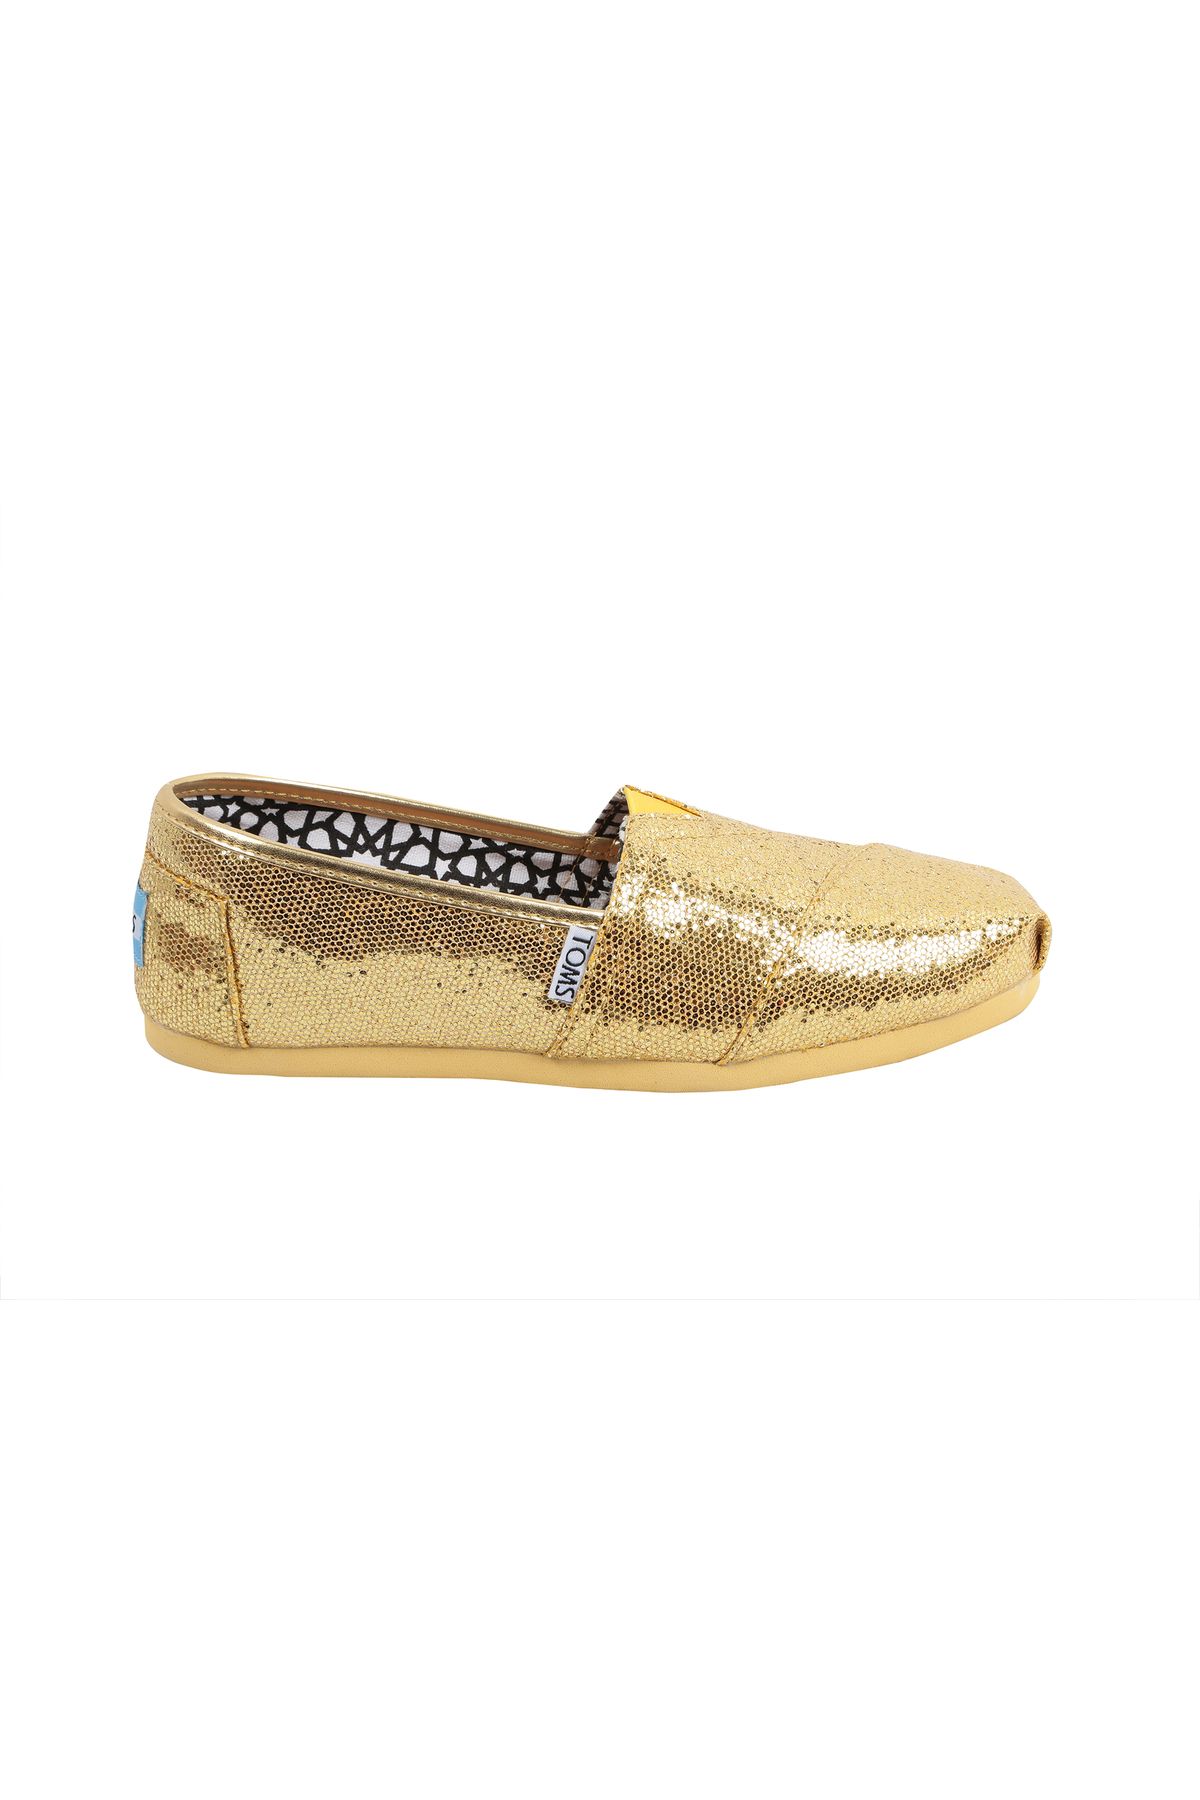 Toms Gold Glitter Kadın Ayakkabı 1013b07